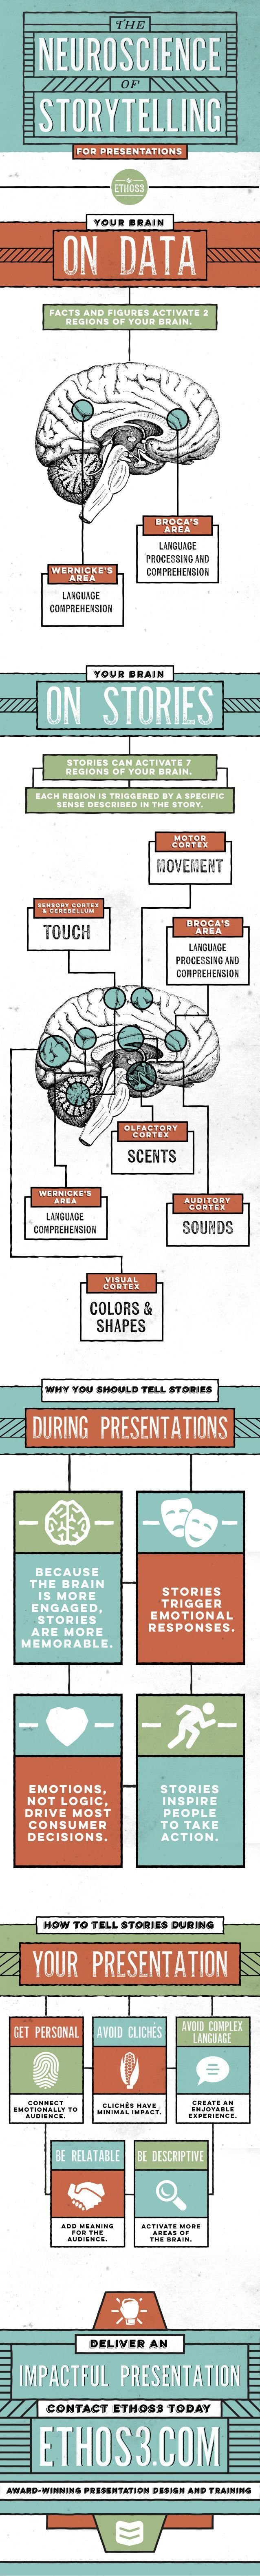 storytelling-infographic.jpg